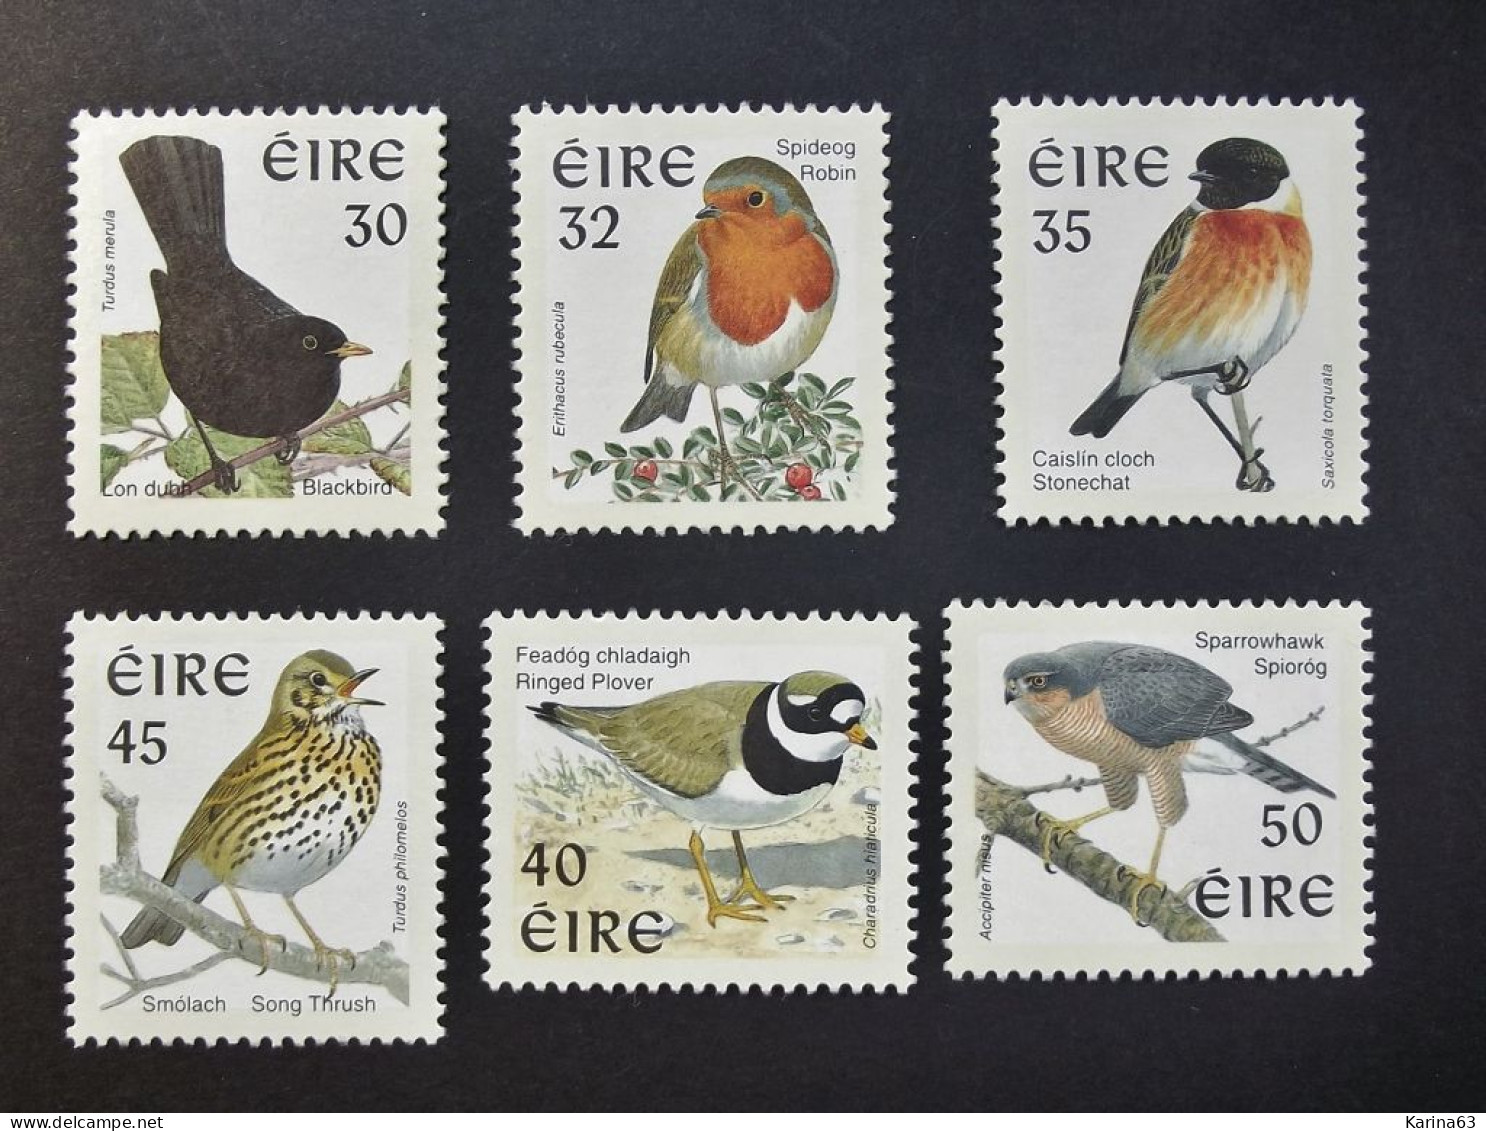 Ireland - Irelande - Eire - 1998 - Y&T N° 1057 / 1062 - (6 Val.) Serie Courante -  Irish Birds - MNH - Postfris - Neufs